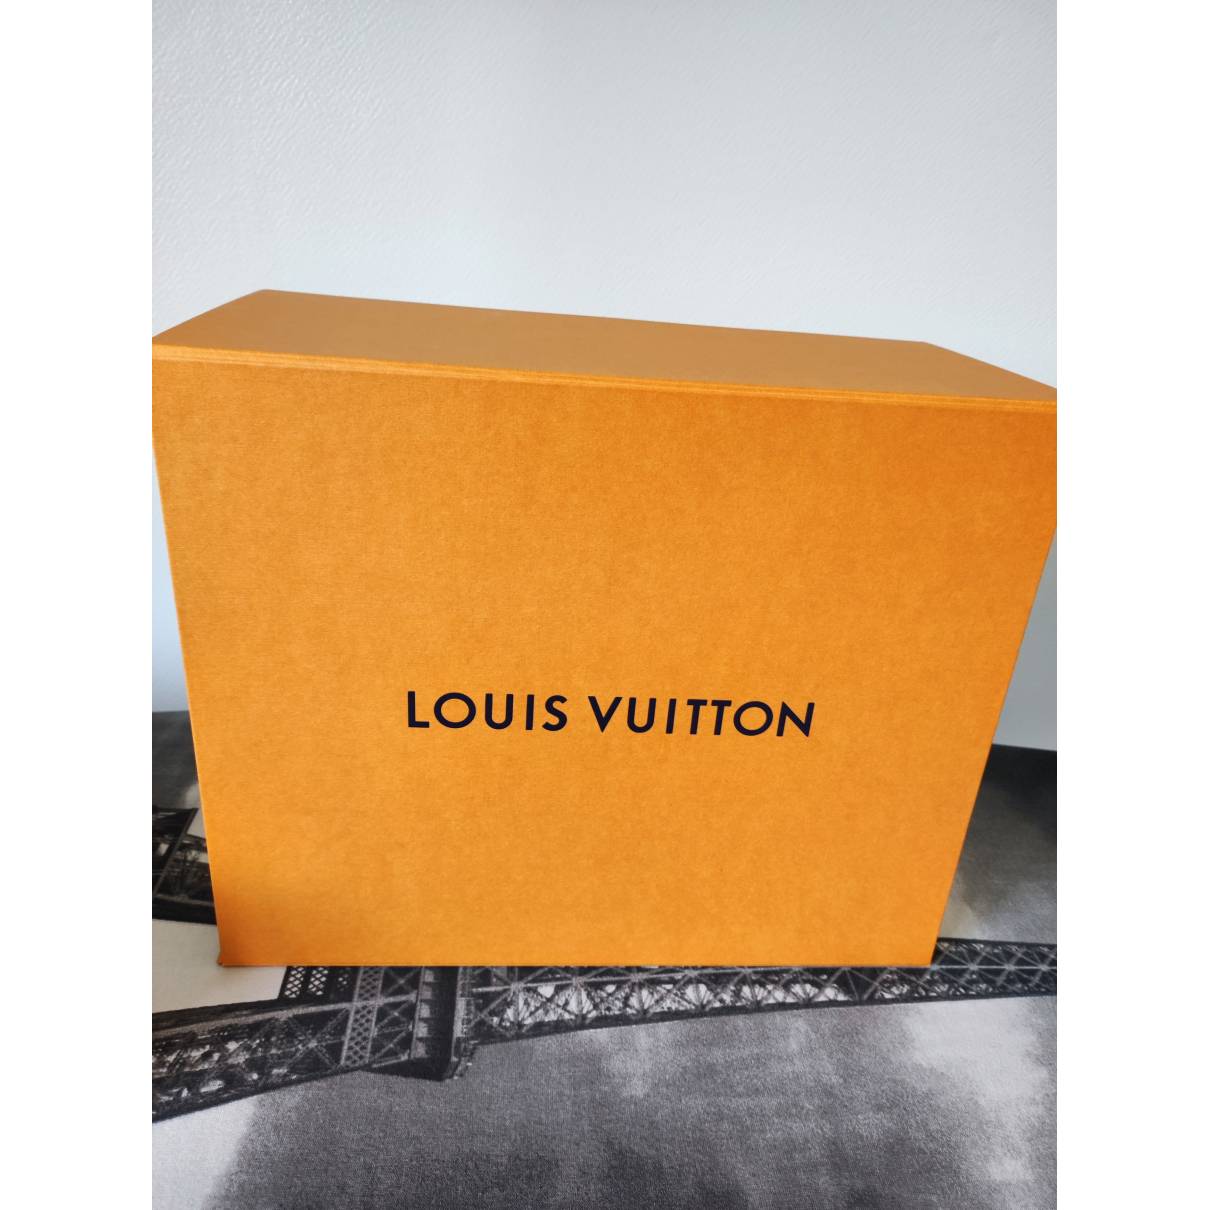 Thames cloth handbag Louis Vuitton Brown in Cloth - 31679211